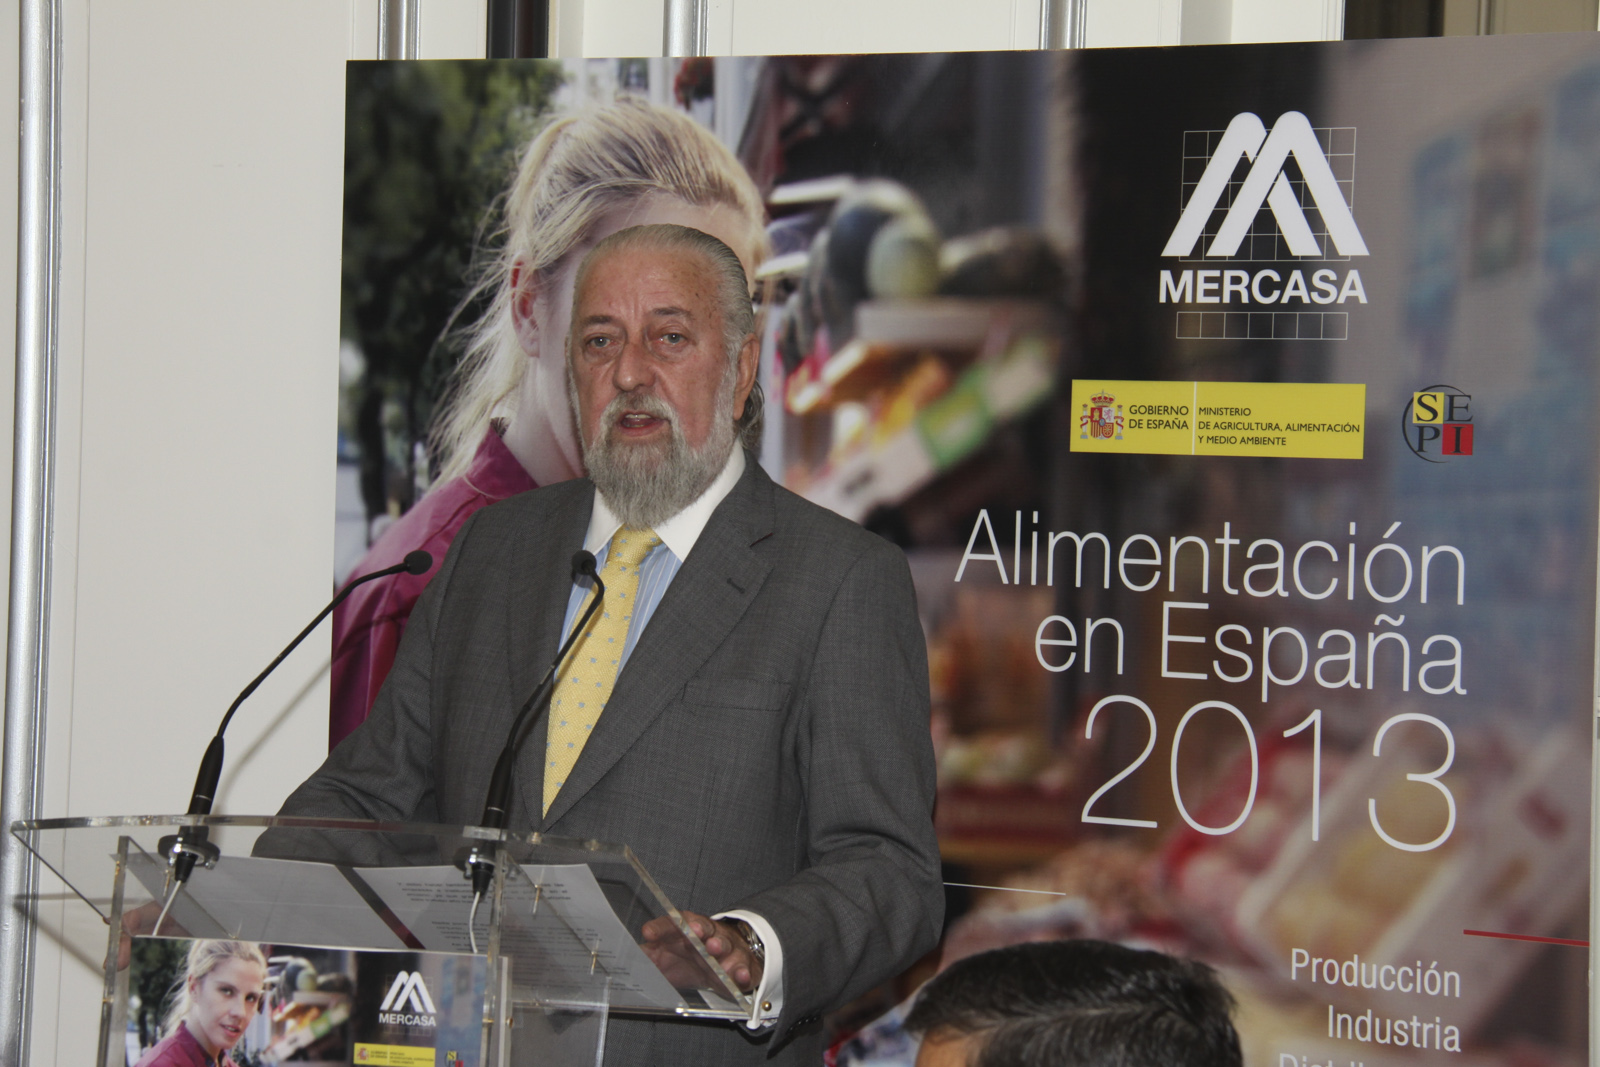 Foto de hombre hablando en atril por la presentación de Alimentación en España en 2013